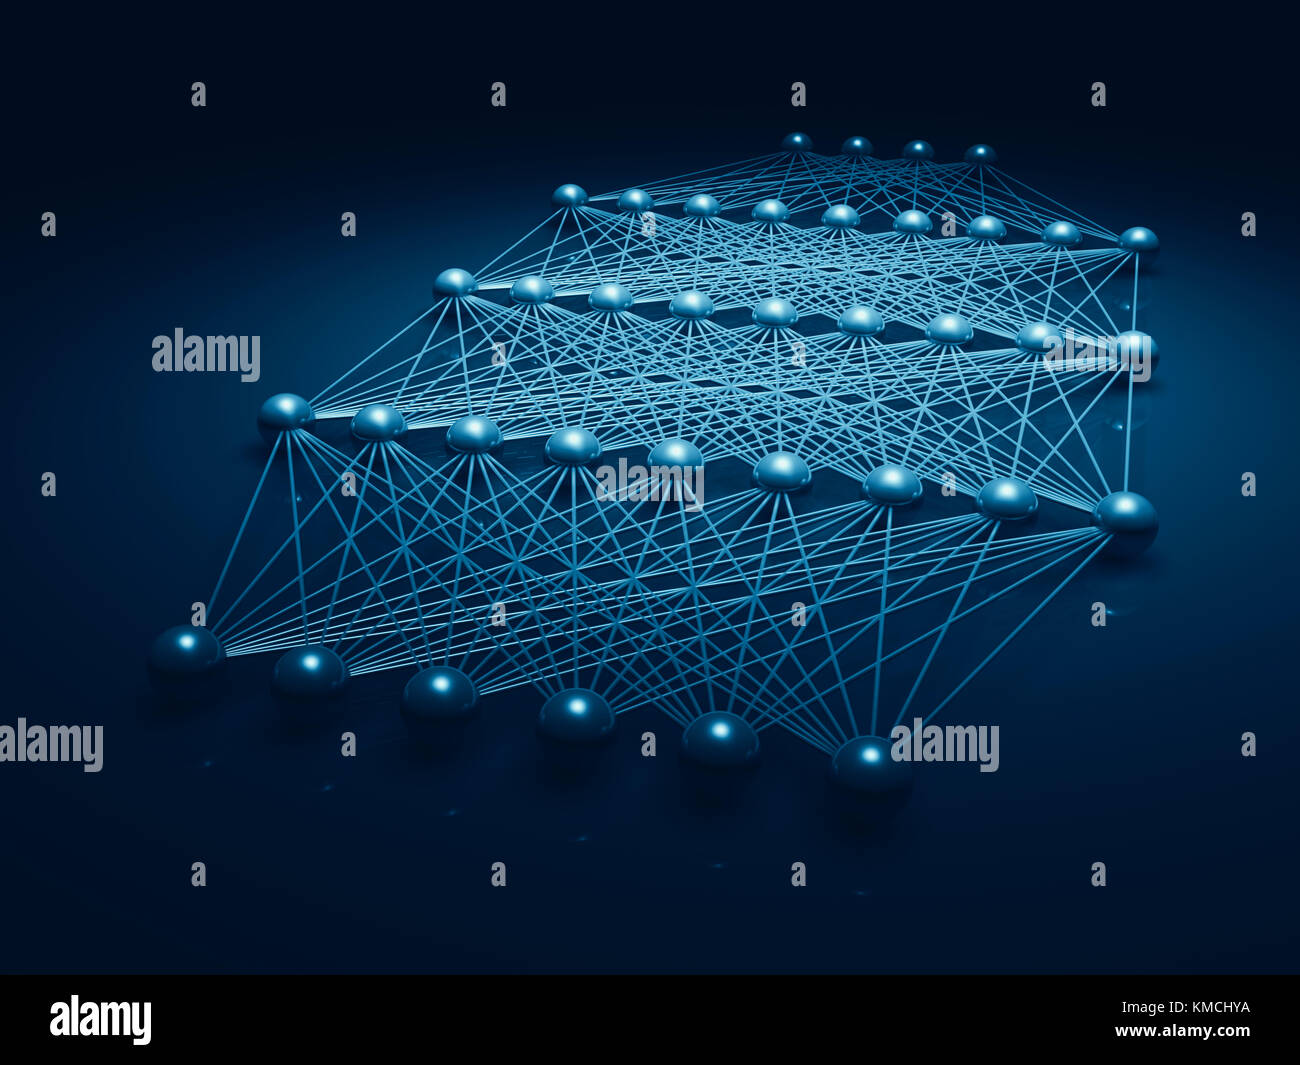 Künstliche tiefe neuronale Netzwerk Struktur, blau Digitale Illustration mit schematisches Modell, 3D-Rendering Stockfoto